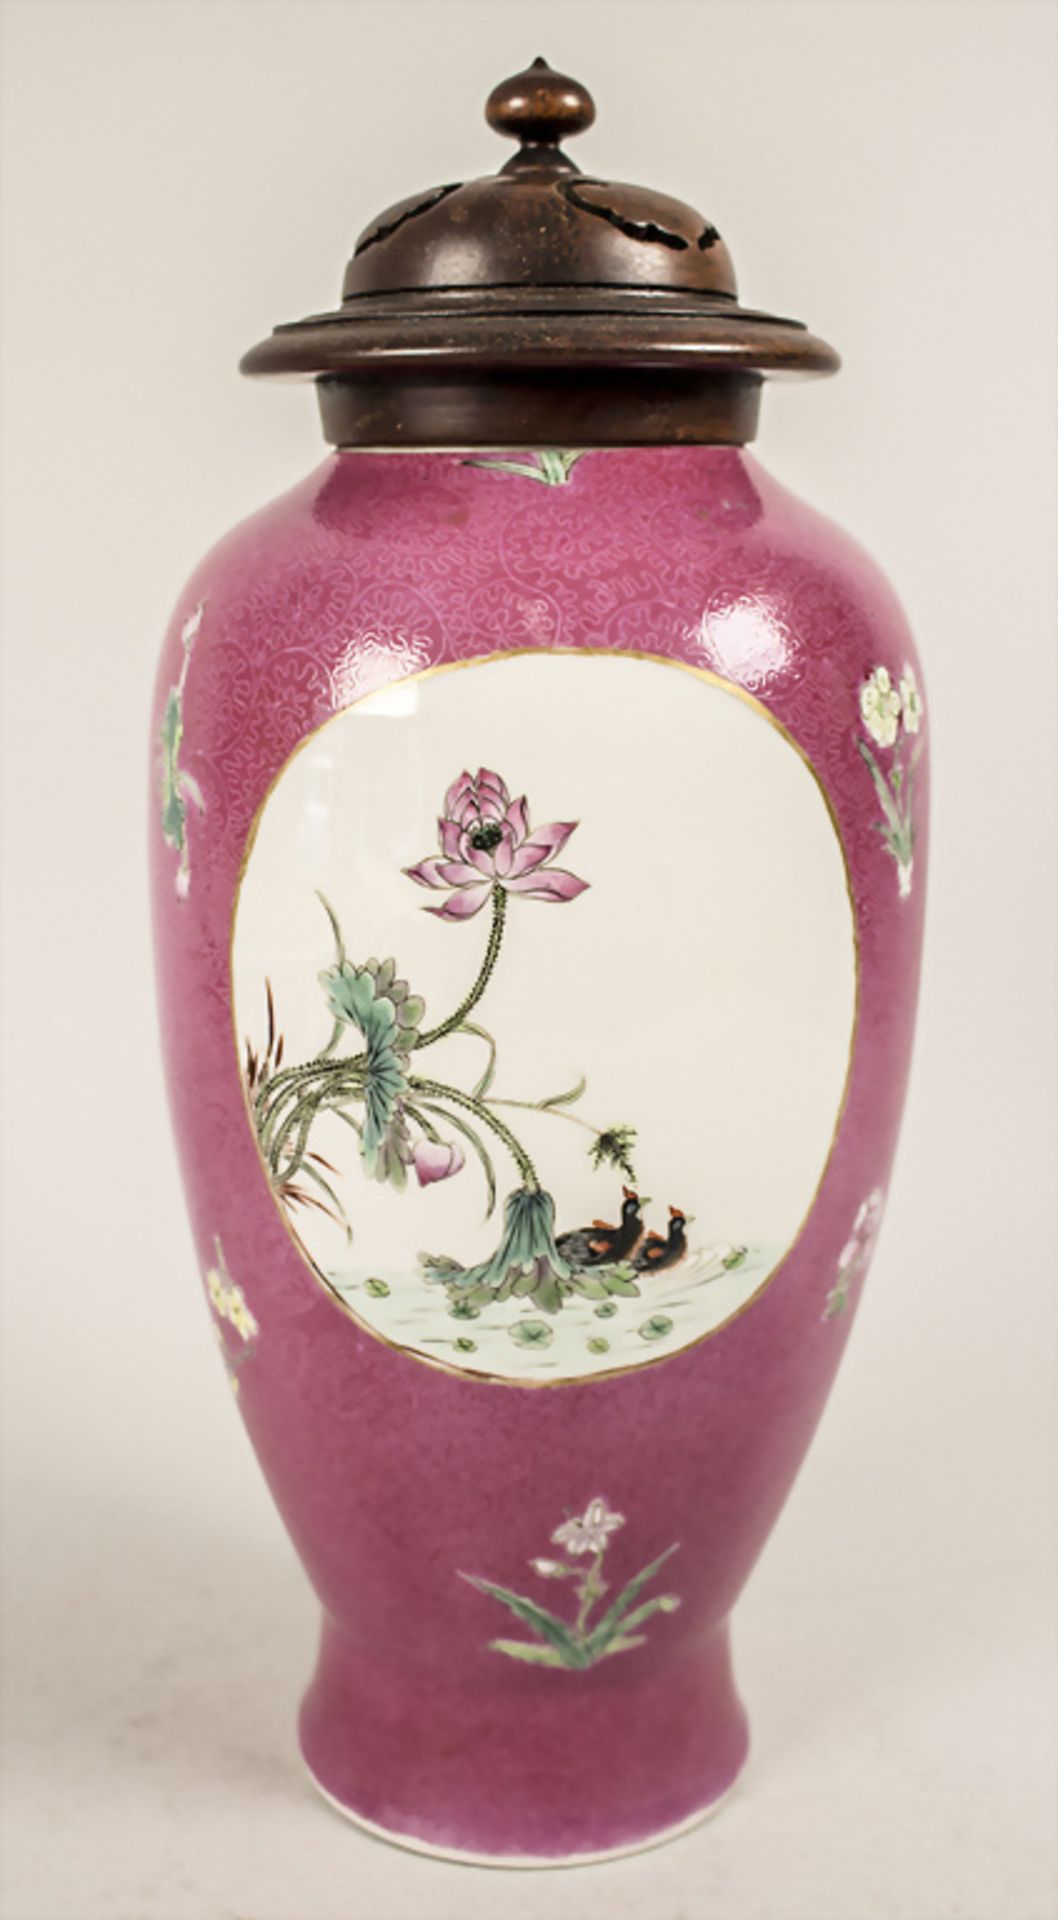 Ziervase / A decorative vase, China, Qing Dynastie (1644-1911) - Bild 5 aus 7